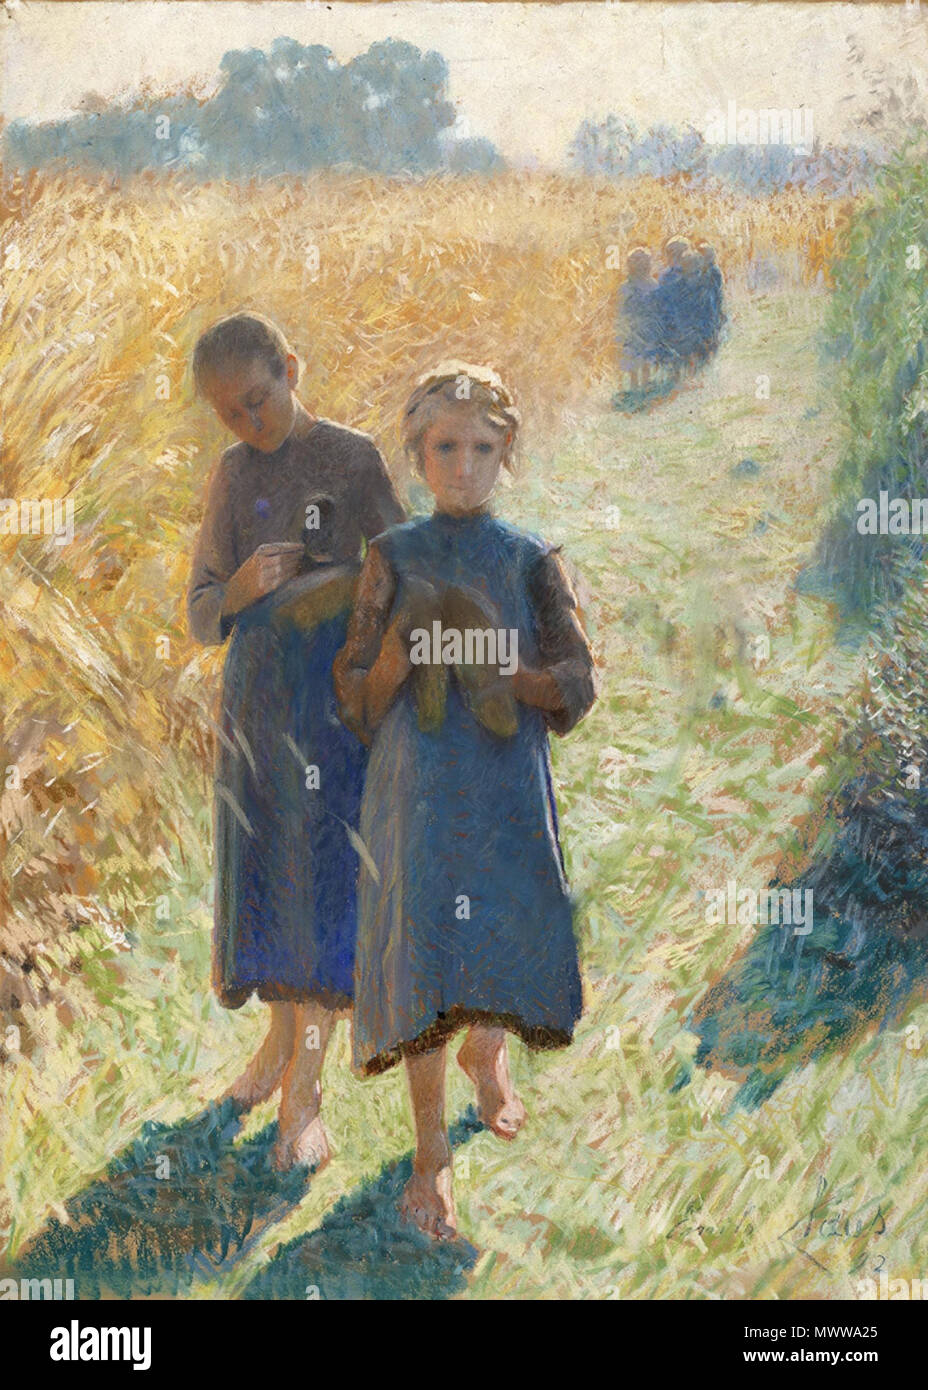 . Anglais : peinture impressionniste belge par Emile Claus. 27 août 2009, 10:15:52. Emile Claus (1849-1924) 186 Emile Clause - Country Life Banque D'Images